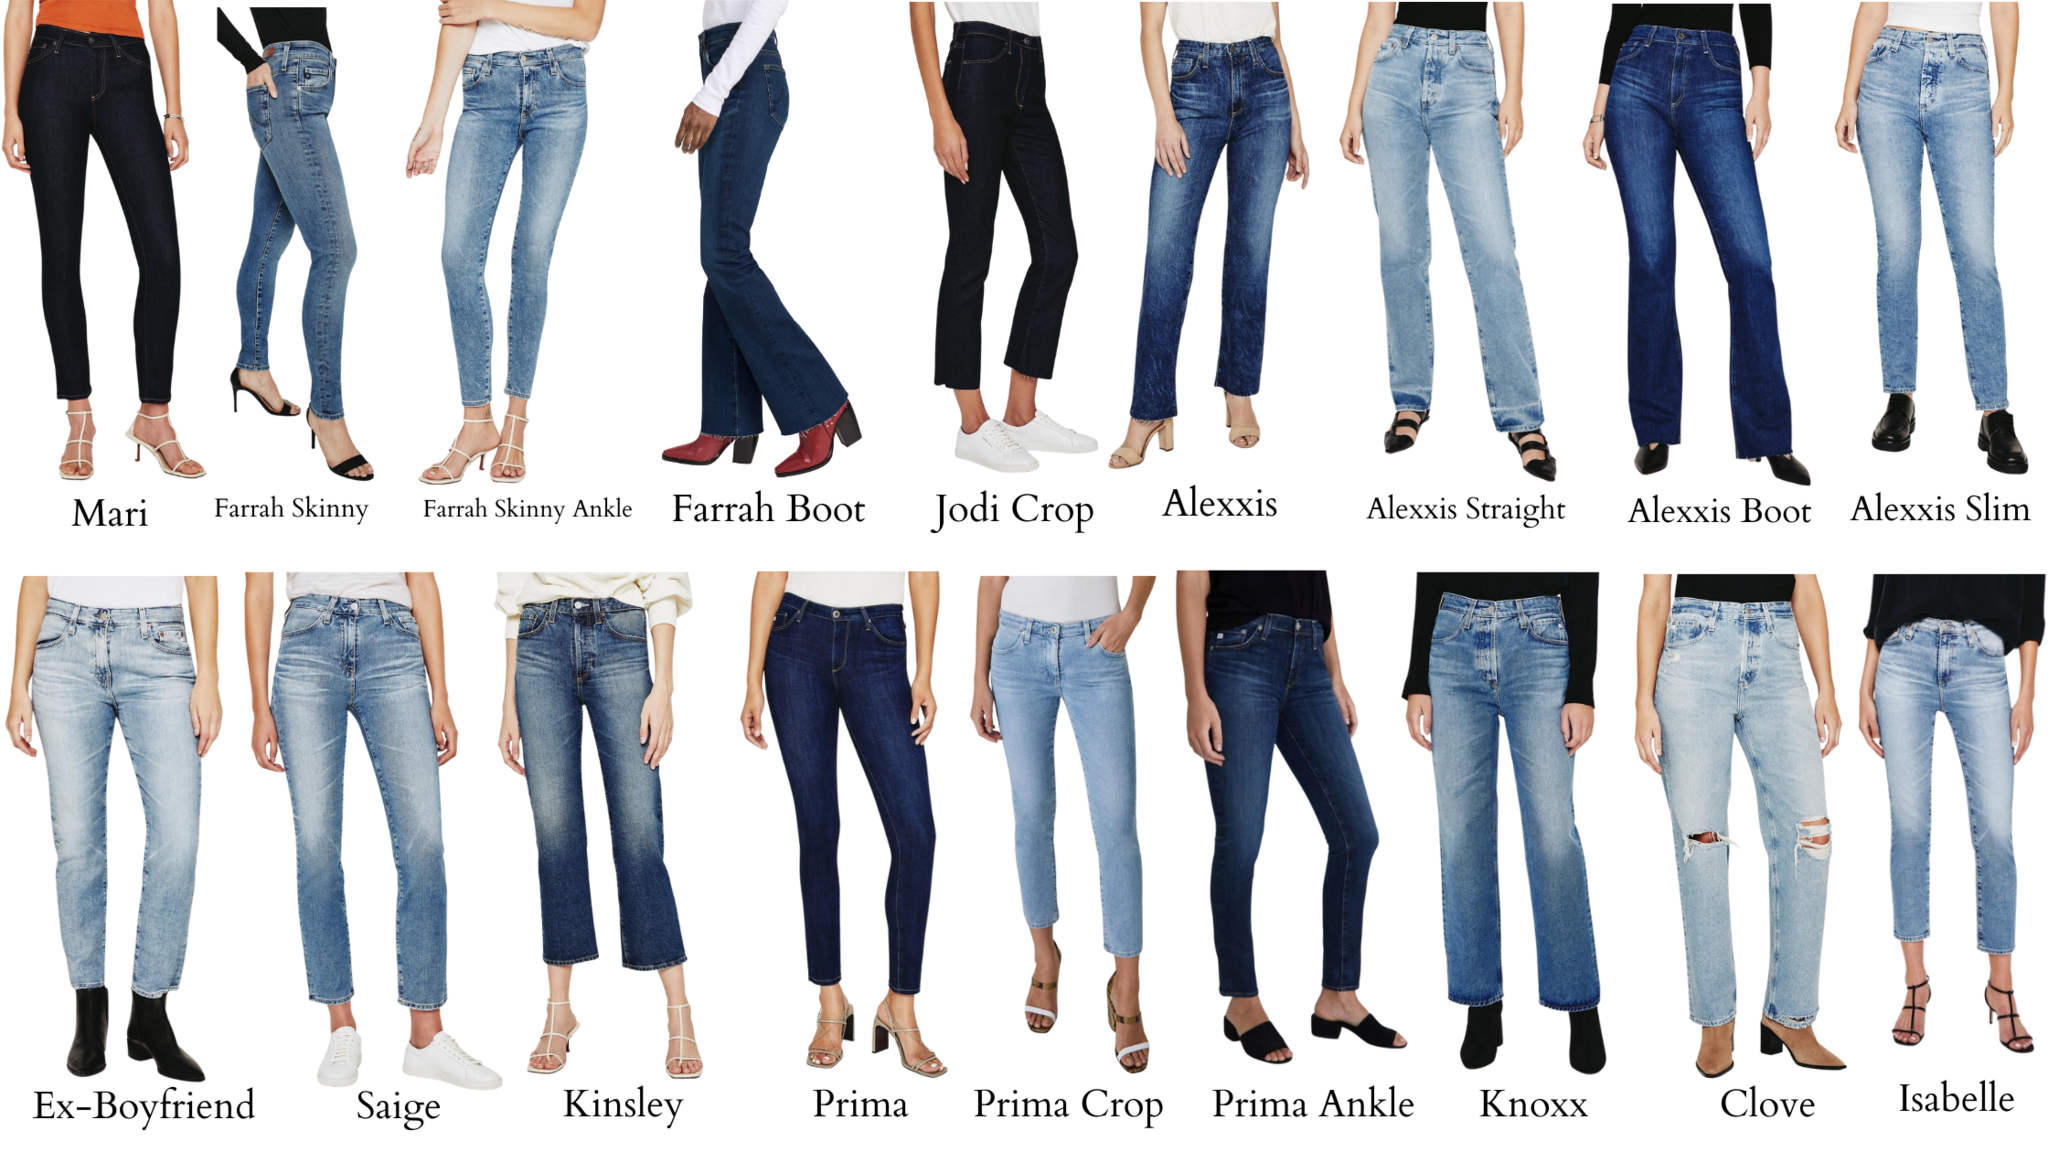 Men's Jeans - Low Rise, Skinny, Boot Cut & More